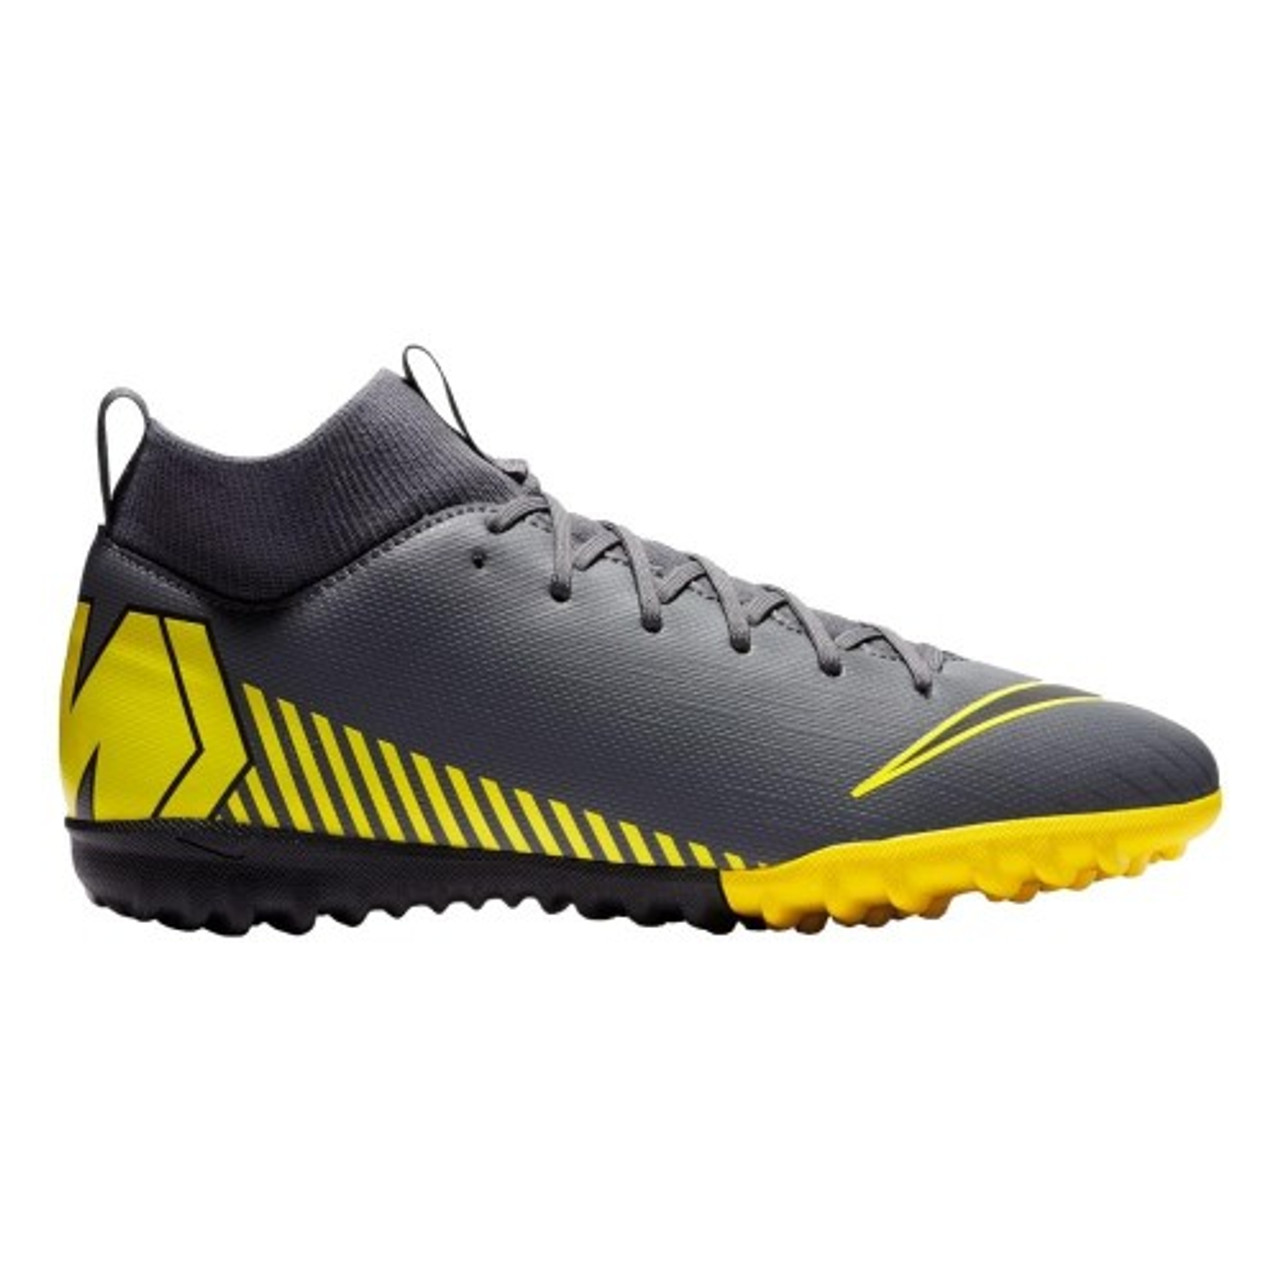 Nike SuperflyX 6 Academy Mens Indoor Soccer Shoe